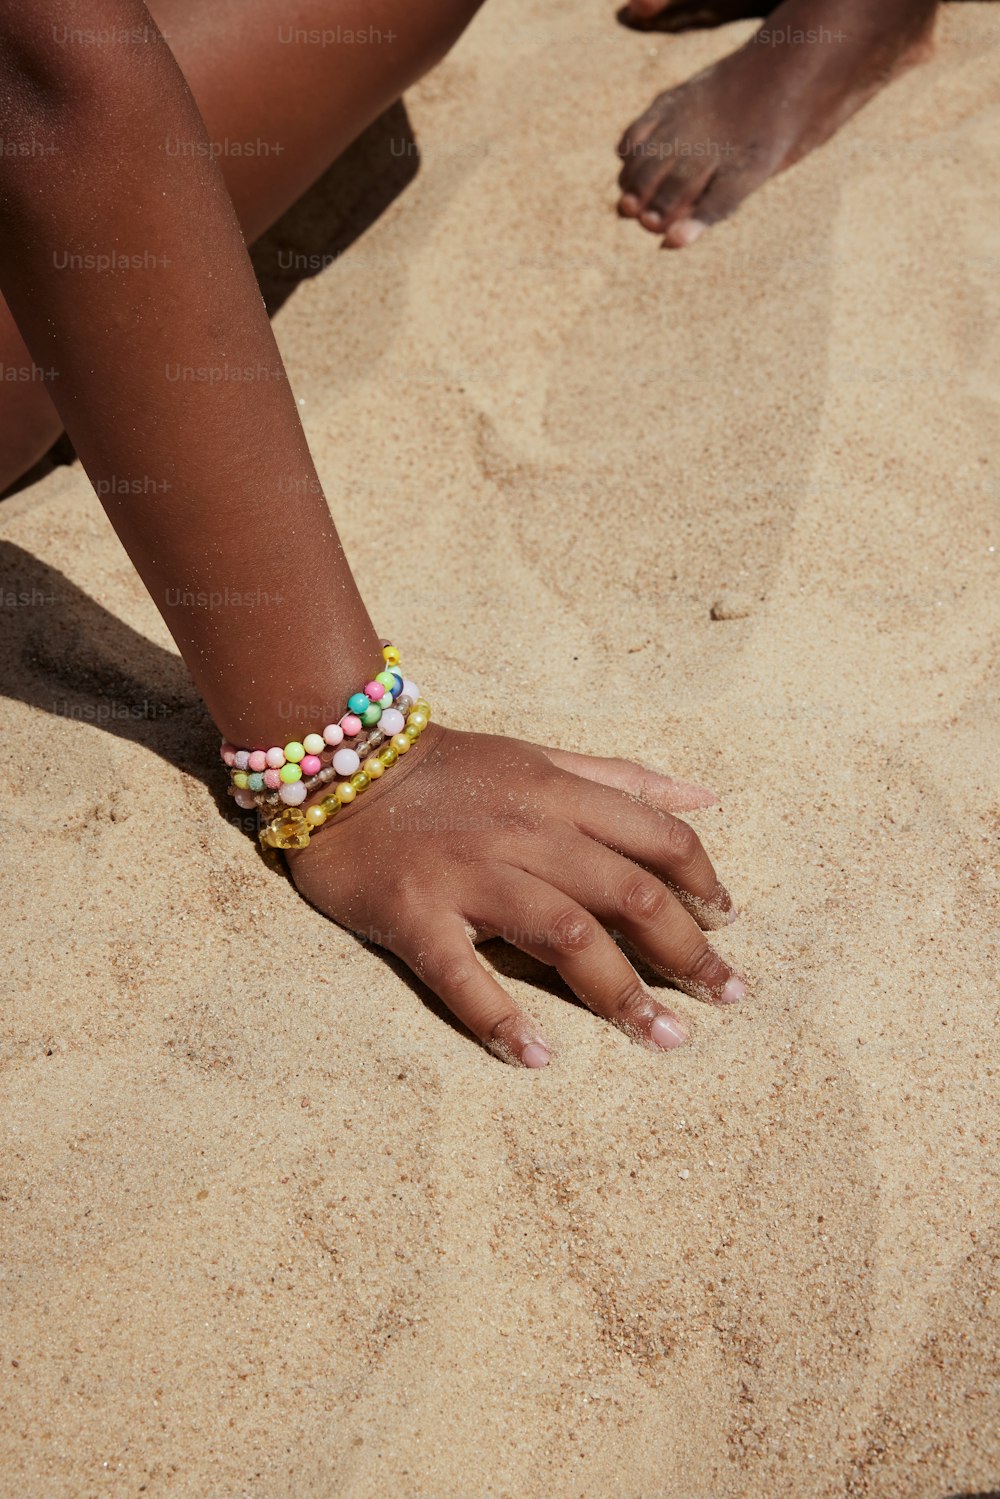 Un primer plano de la mano de una persona en la arena